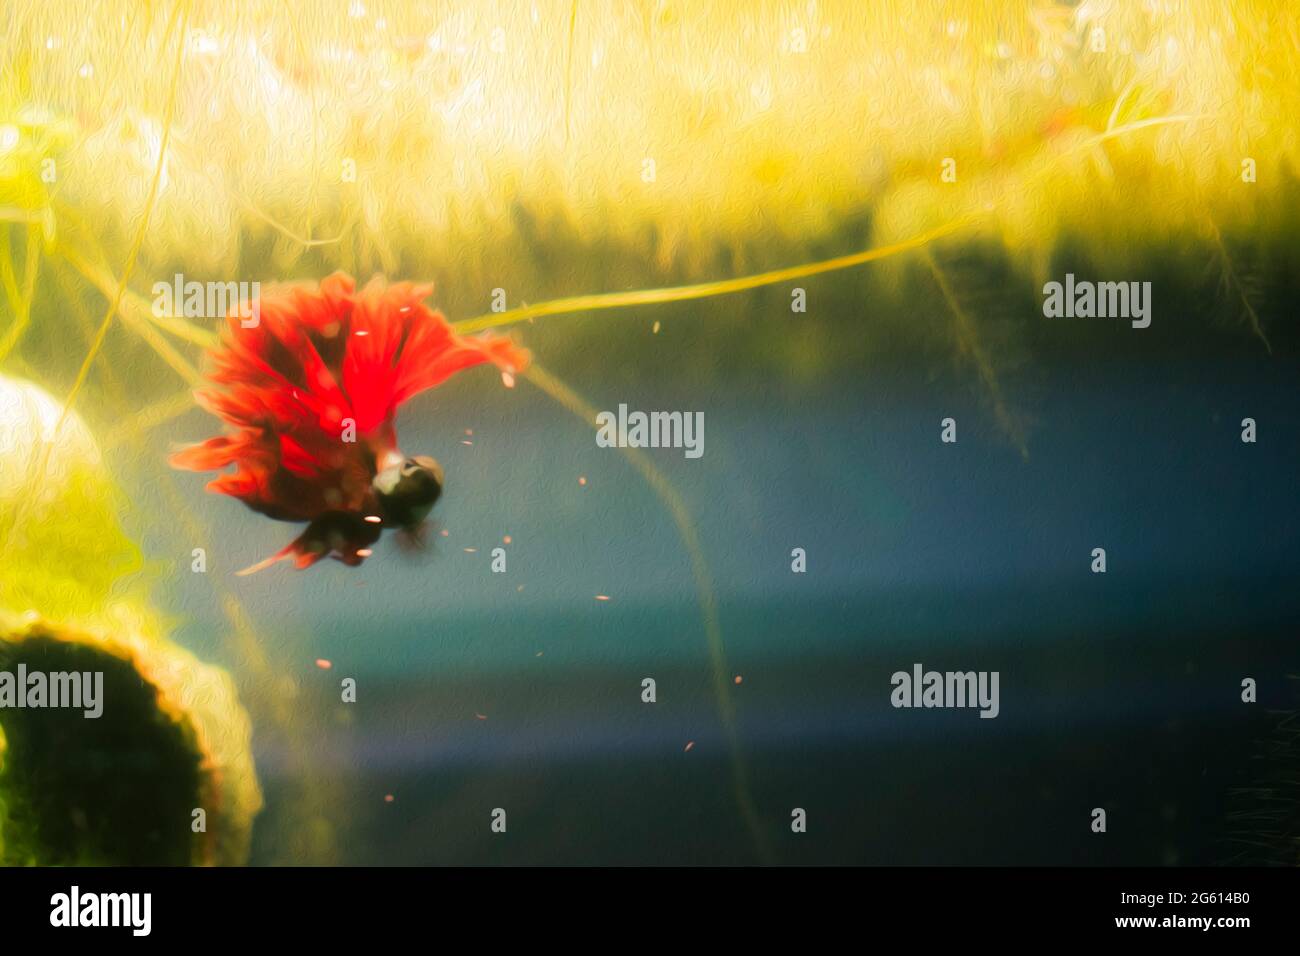 Pesce rosso profondo Dragon Betta con corpo in teal, acquario in casa. Nuotate in cima all'acquario con piante galleggianti Foto Stock